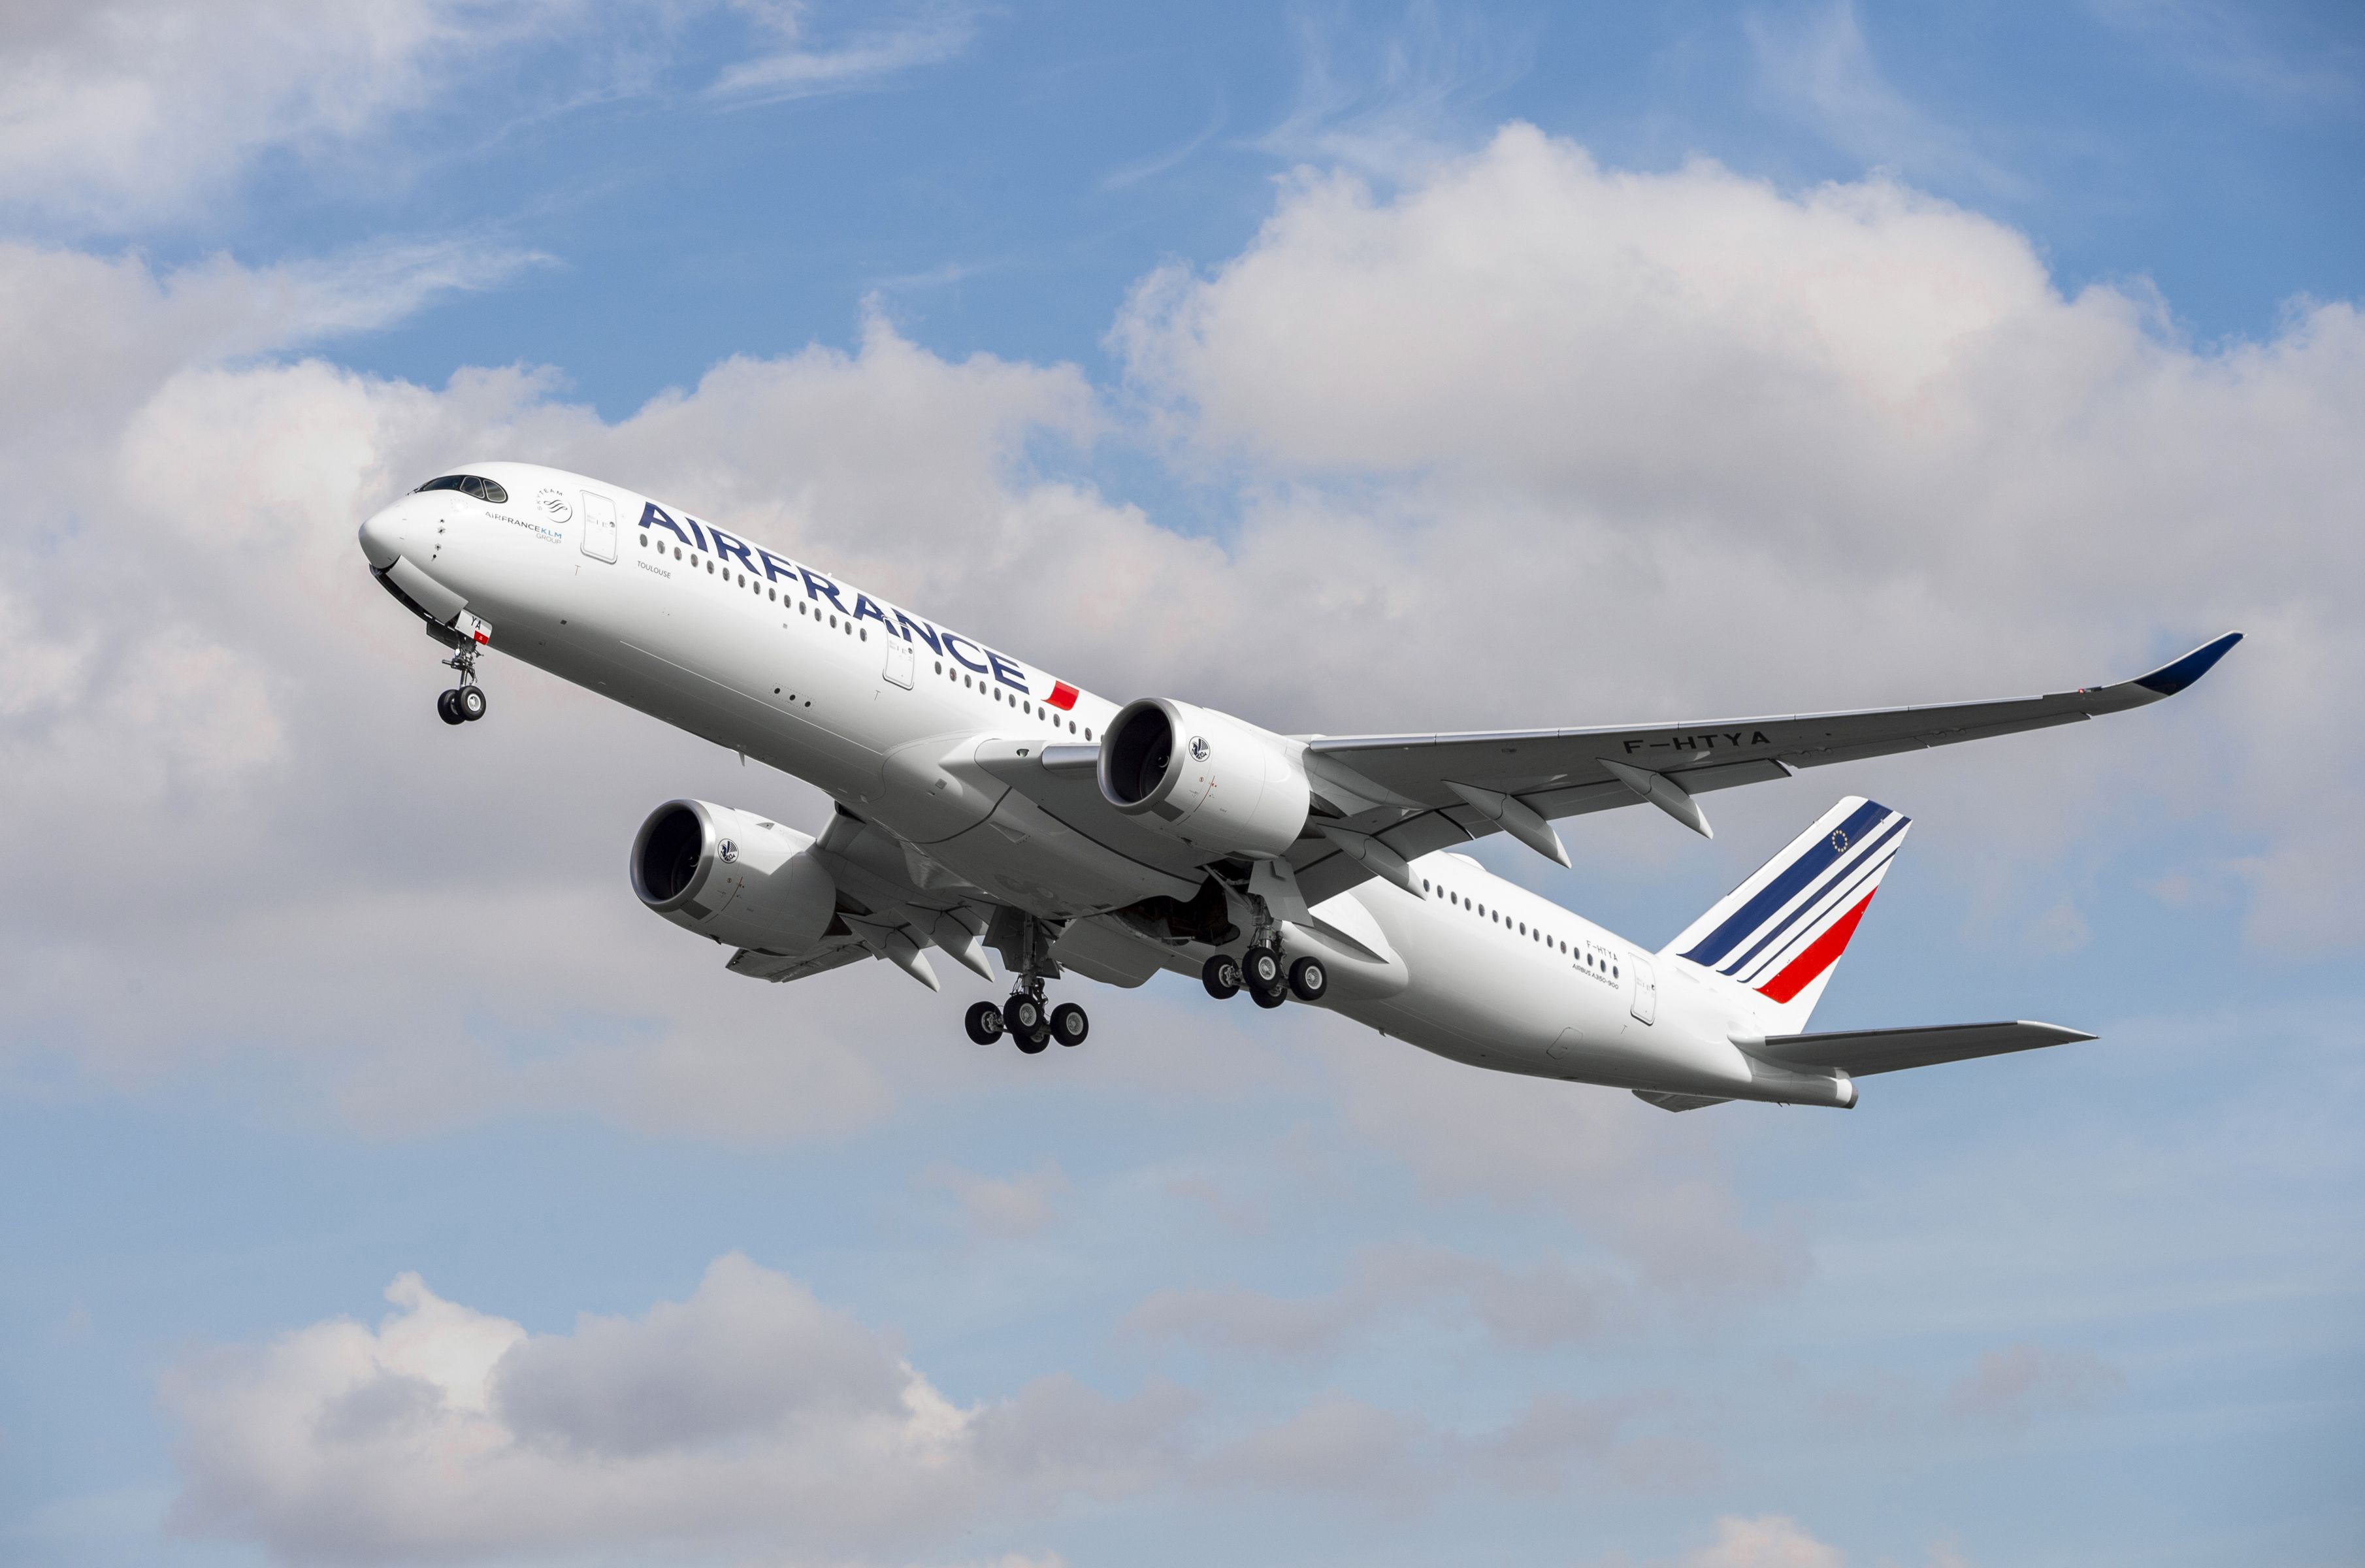 Airbus Air France Passenger Plane Aircraft 3620x2400